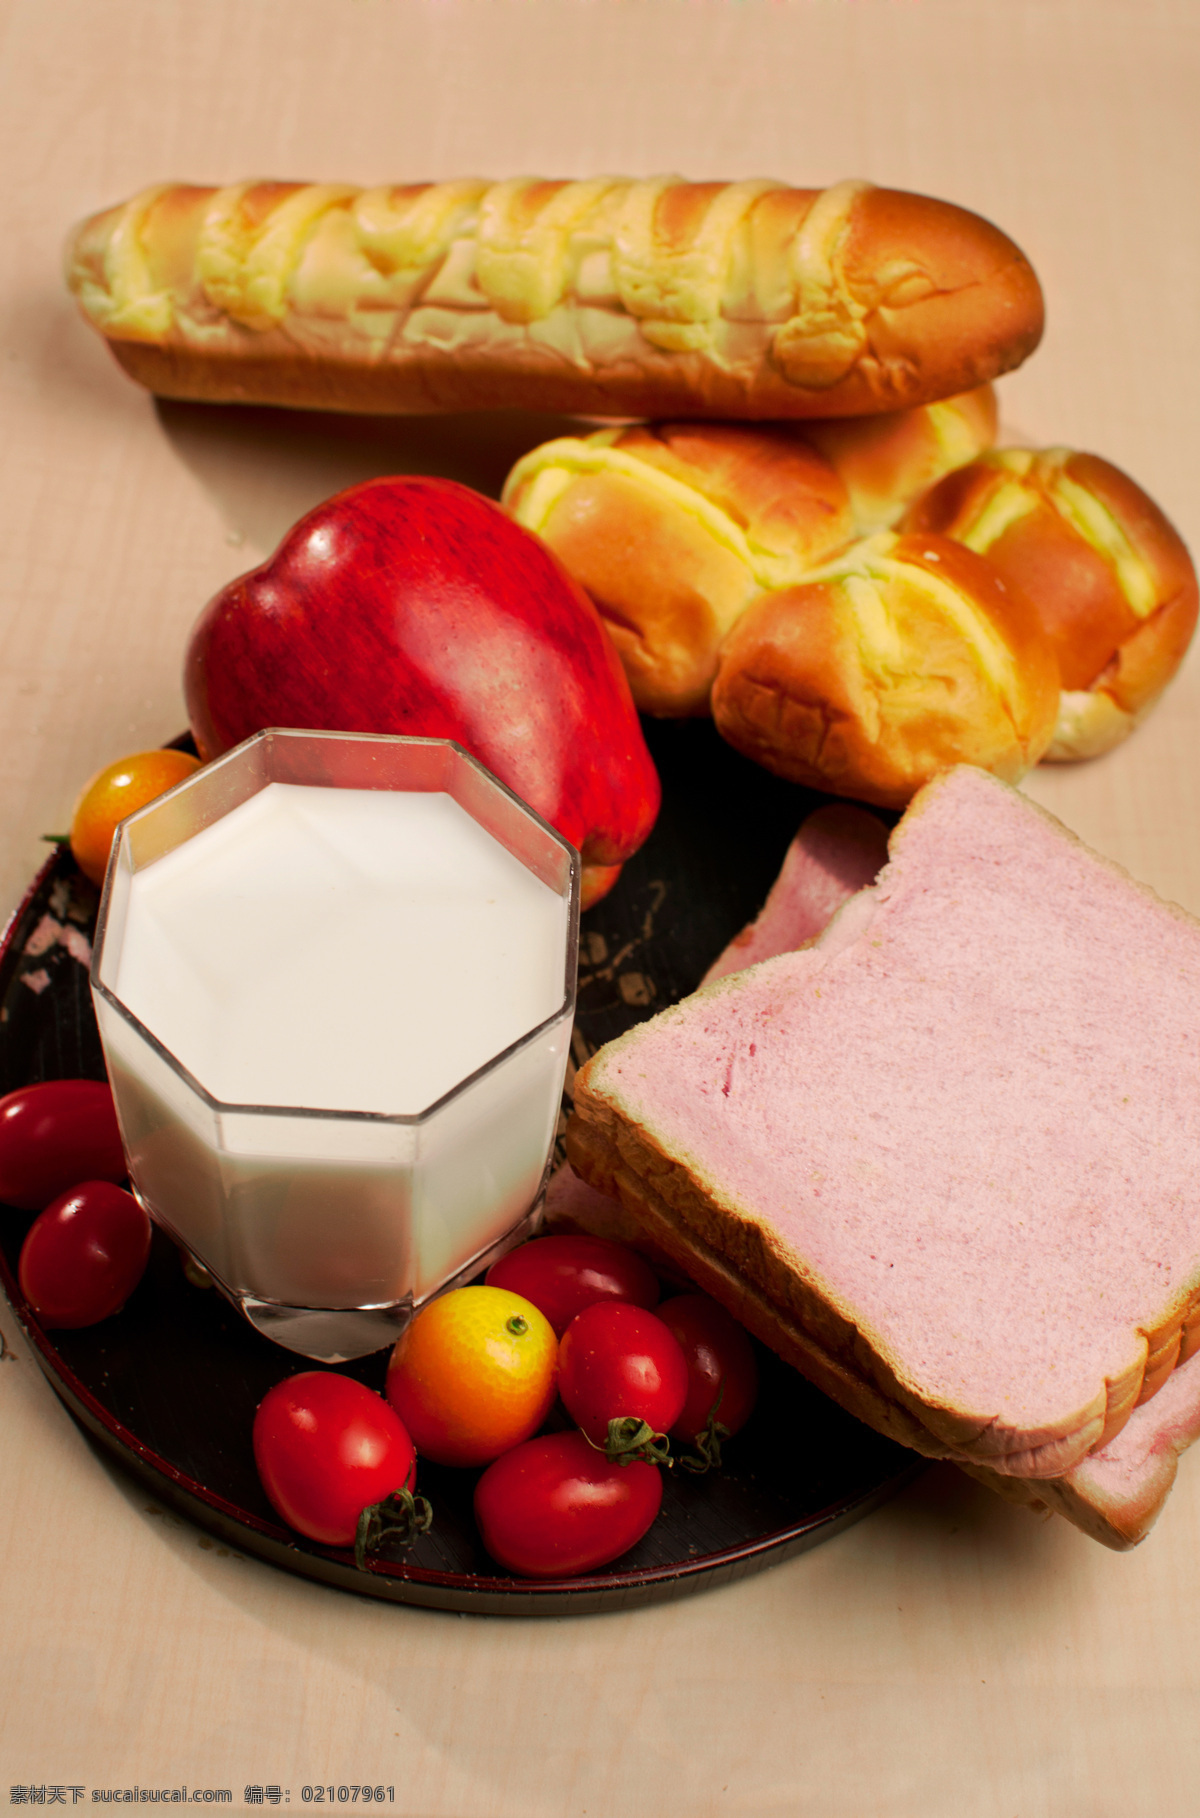 面包 餐饮美食 牛奶 食物 午餐 西餐美食 西红柿 早餐 psd源文件 餐饮素材